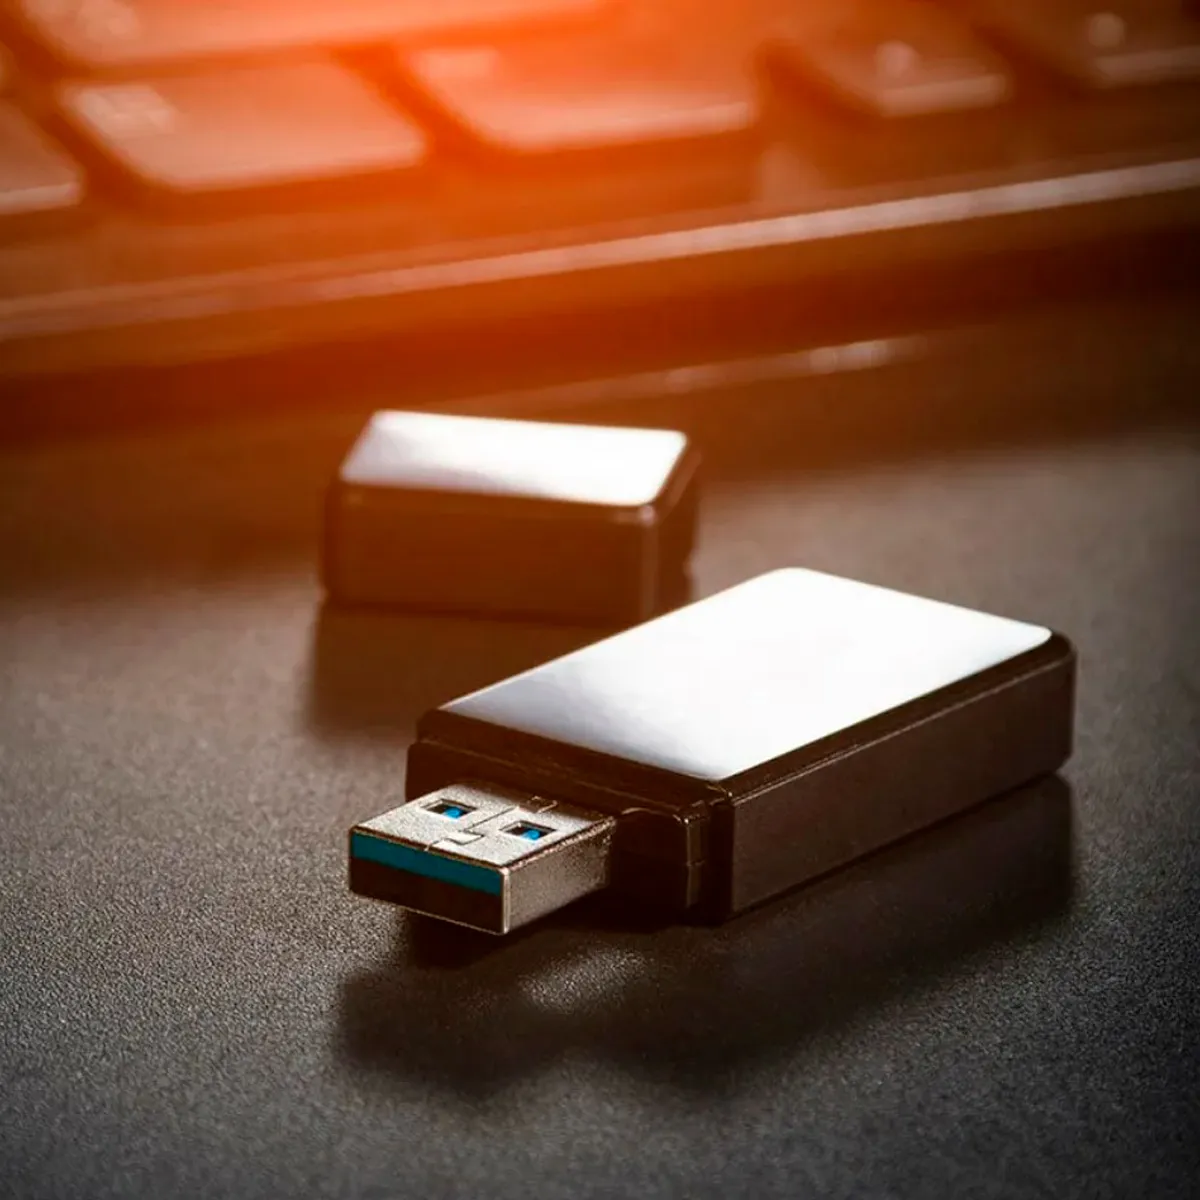 Руководство по использованию USBWebserver на USB-накопителе